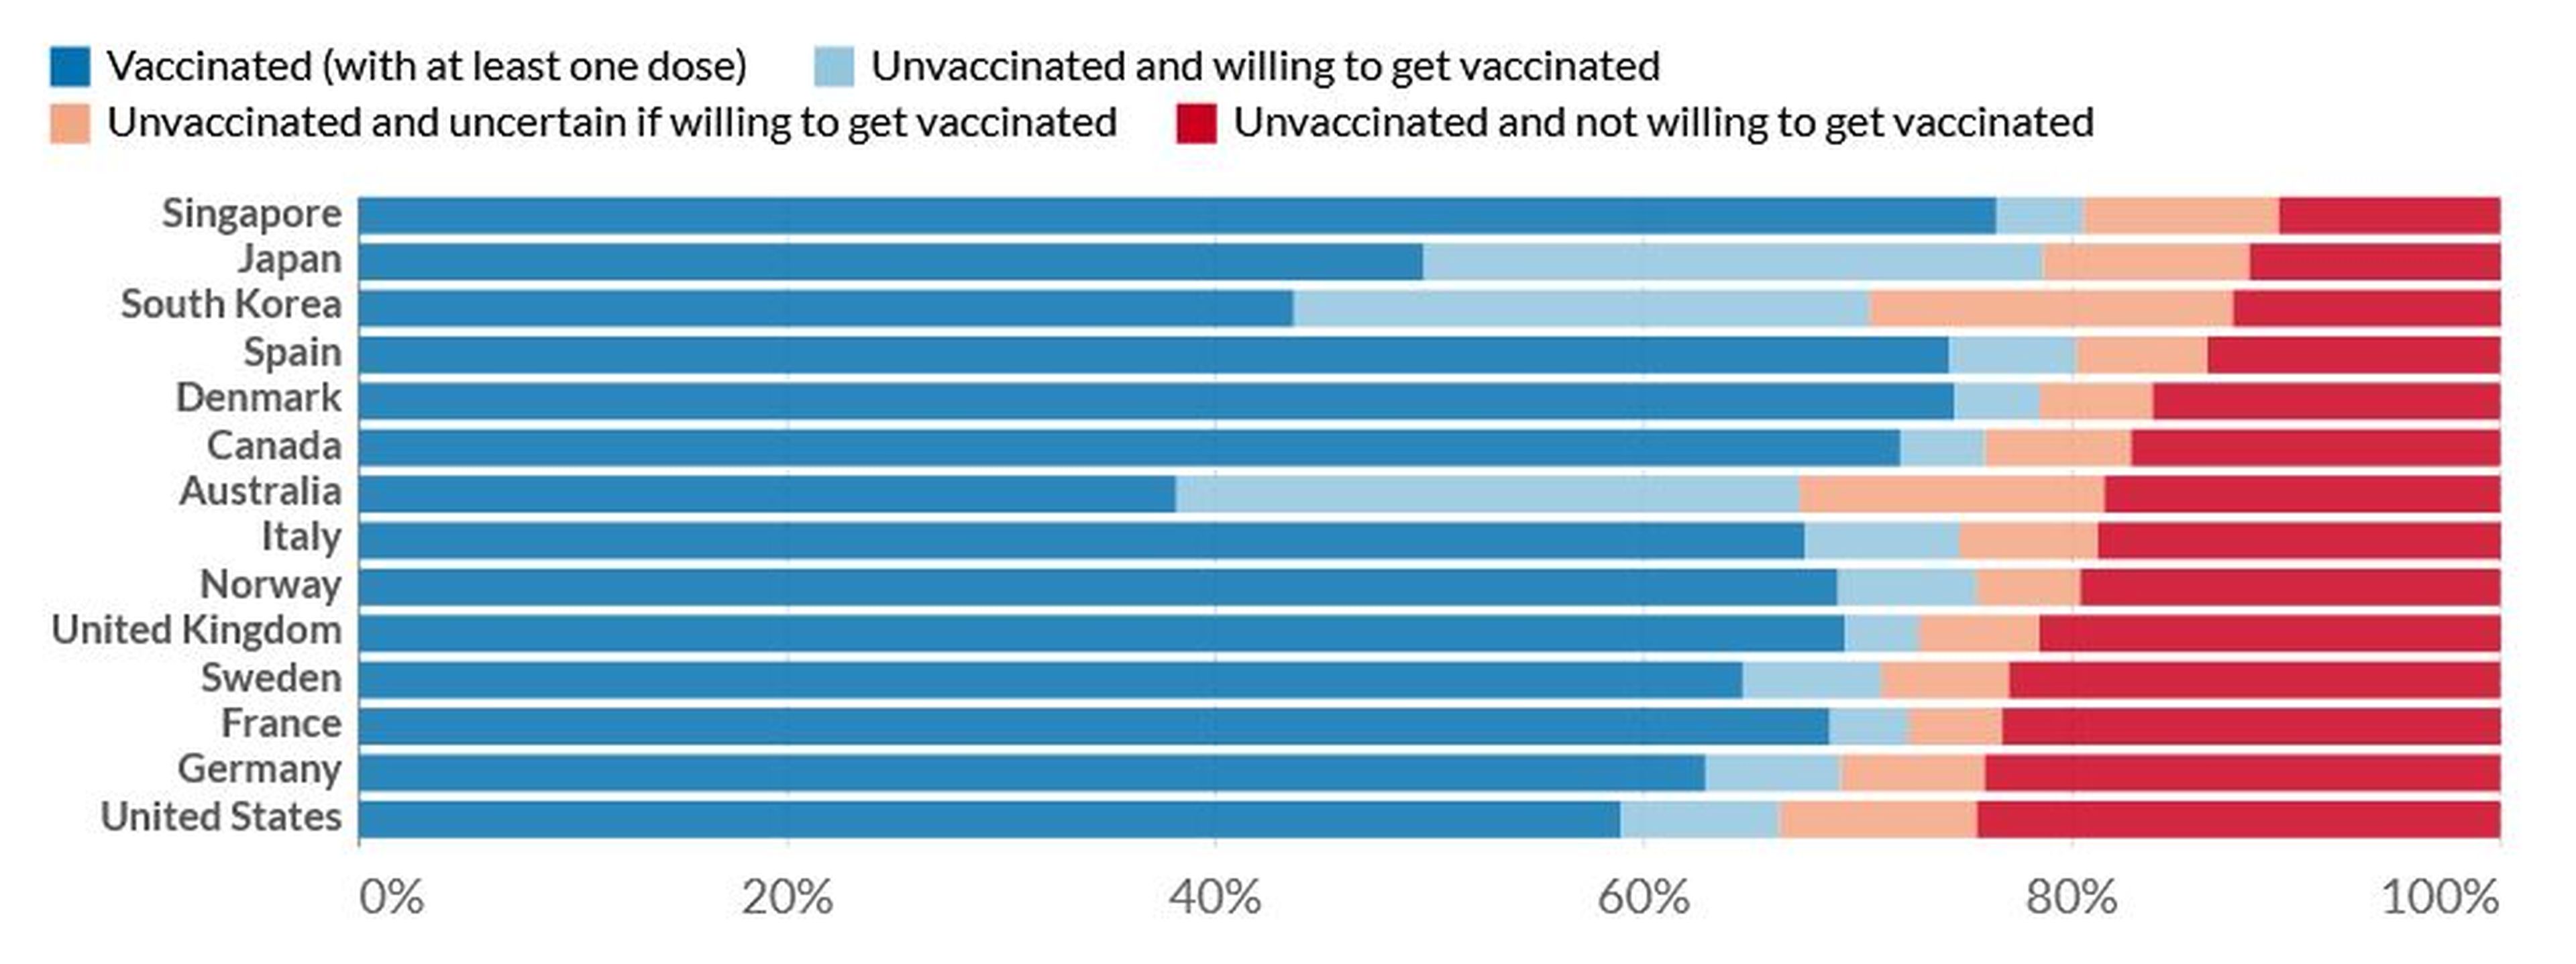 En azul, el porcentaje de personas vacunadas; en rojo, aquellas que han respondido negativamente ante la intención de vacunarse.